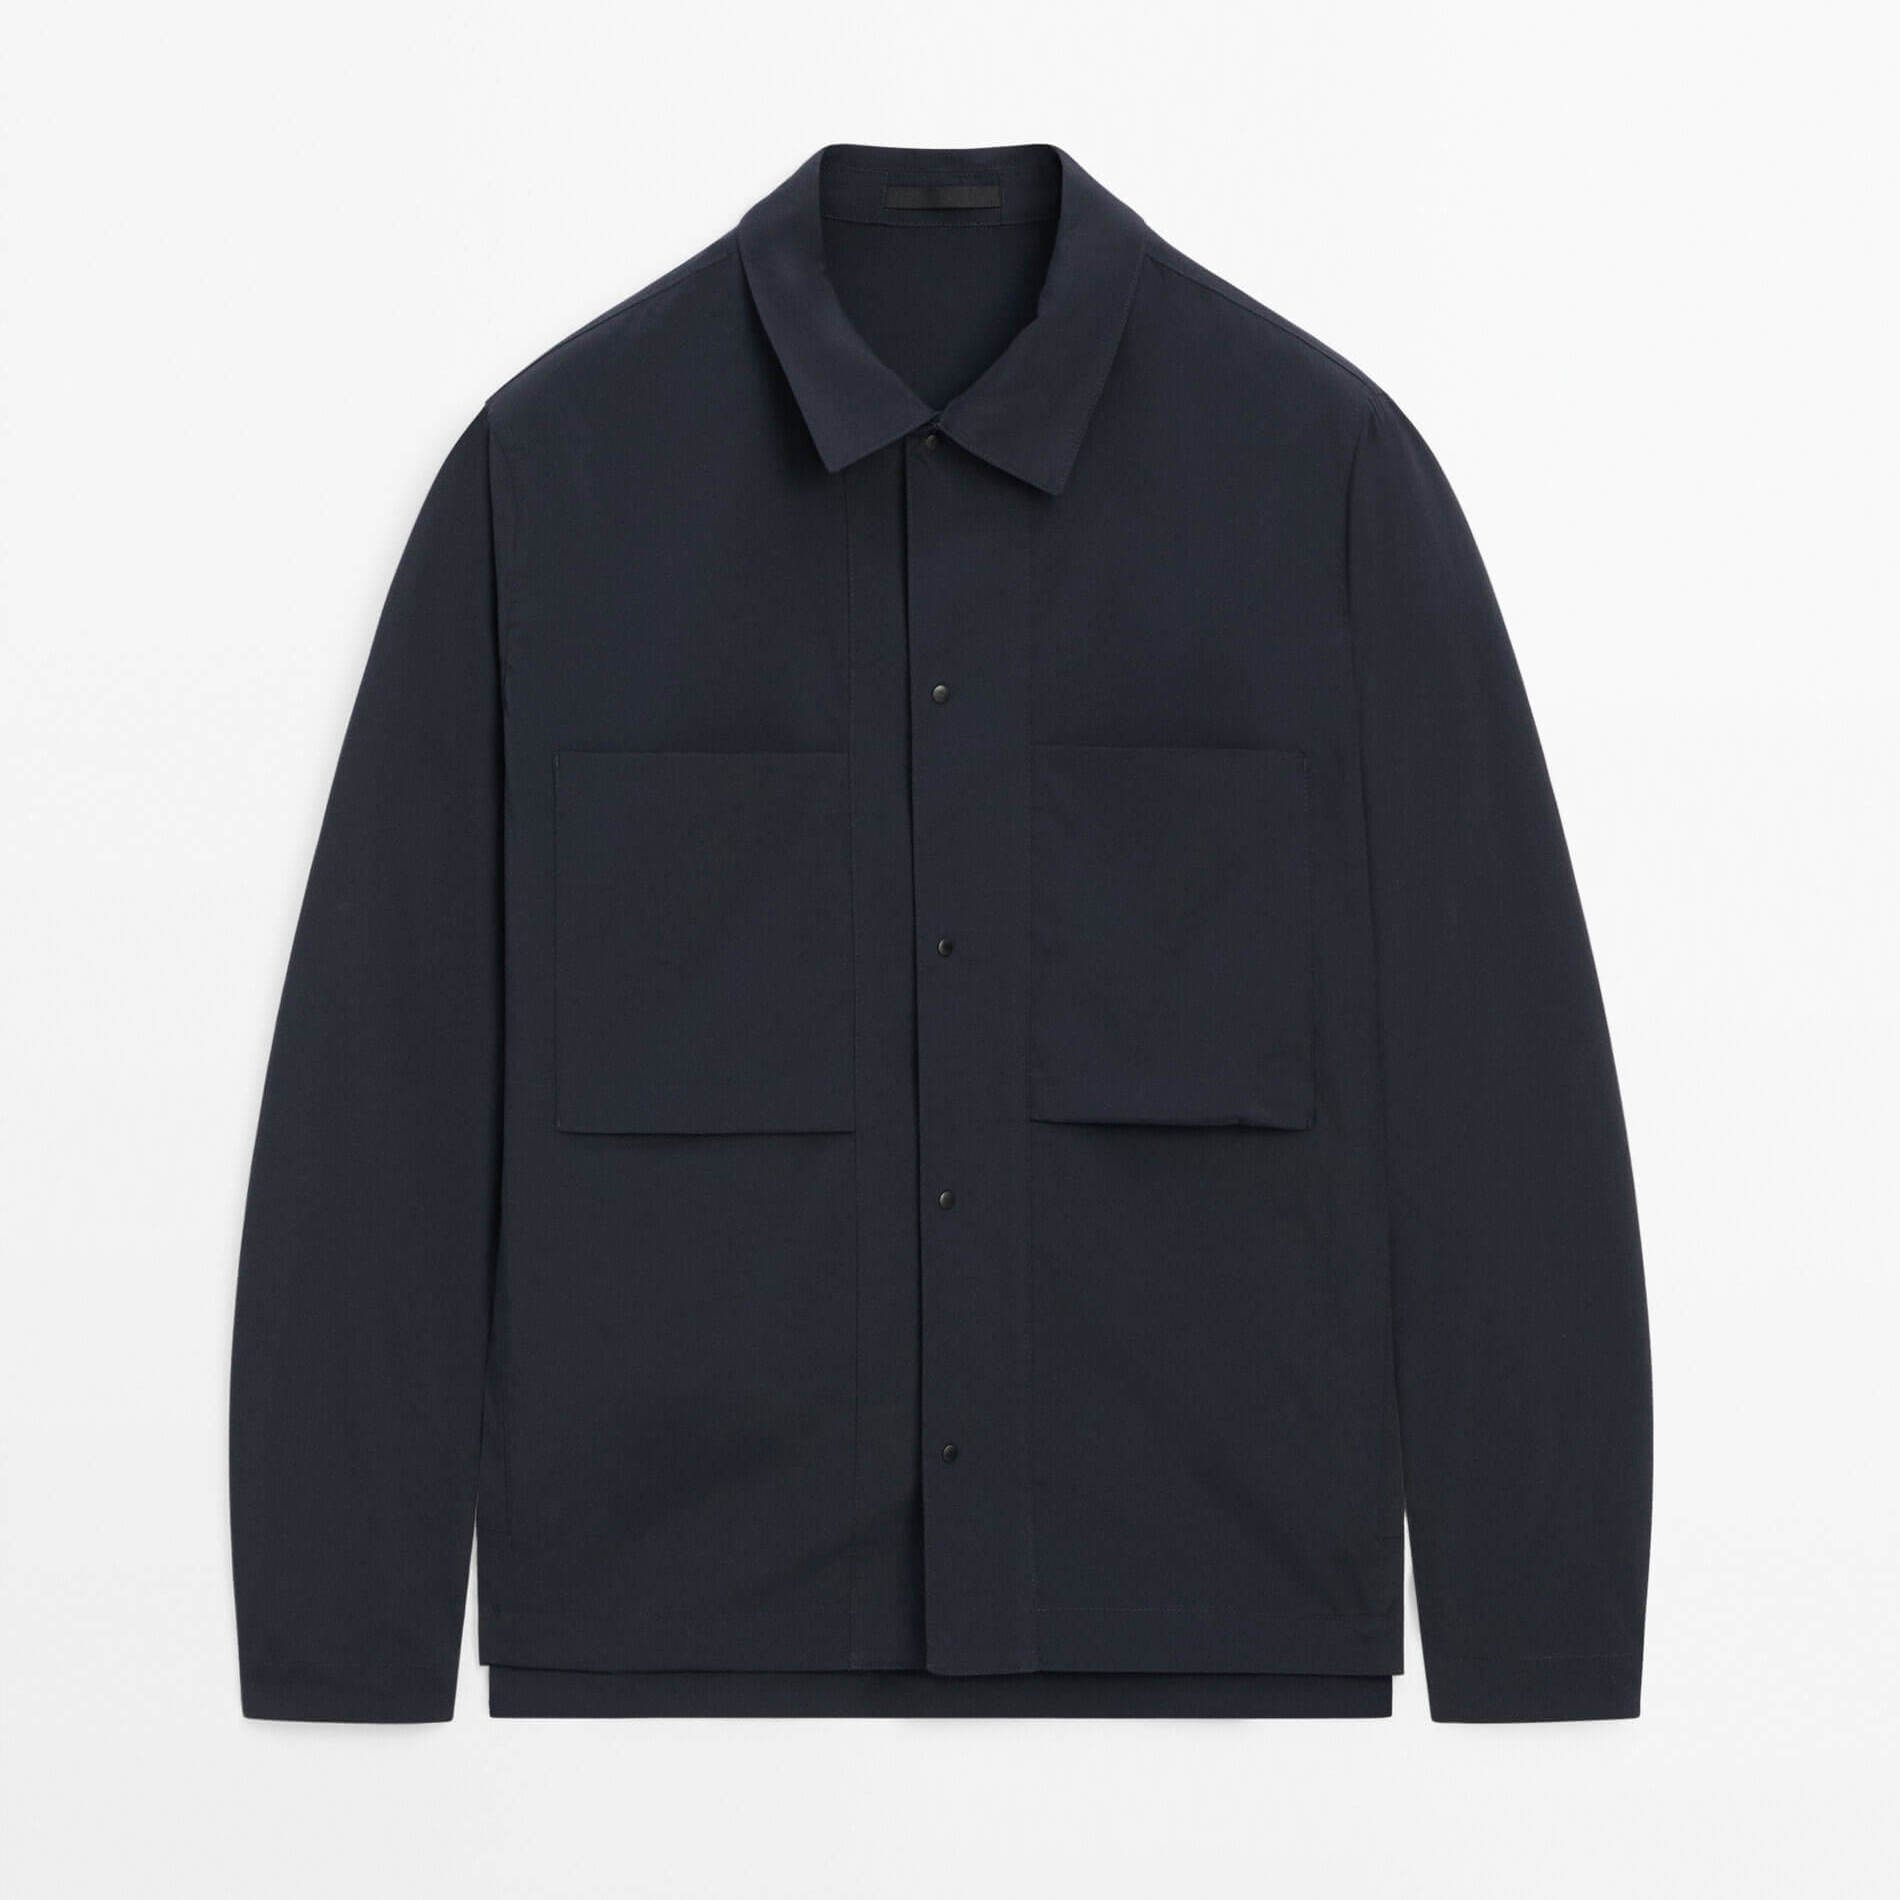 Куртка-рубашка Massimo Dutti With Chest Pockets Studio, темно-синий рубашка massimo dutti suede with chest pockets темно синий